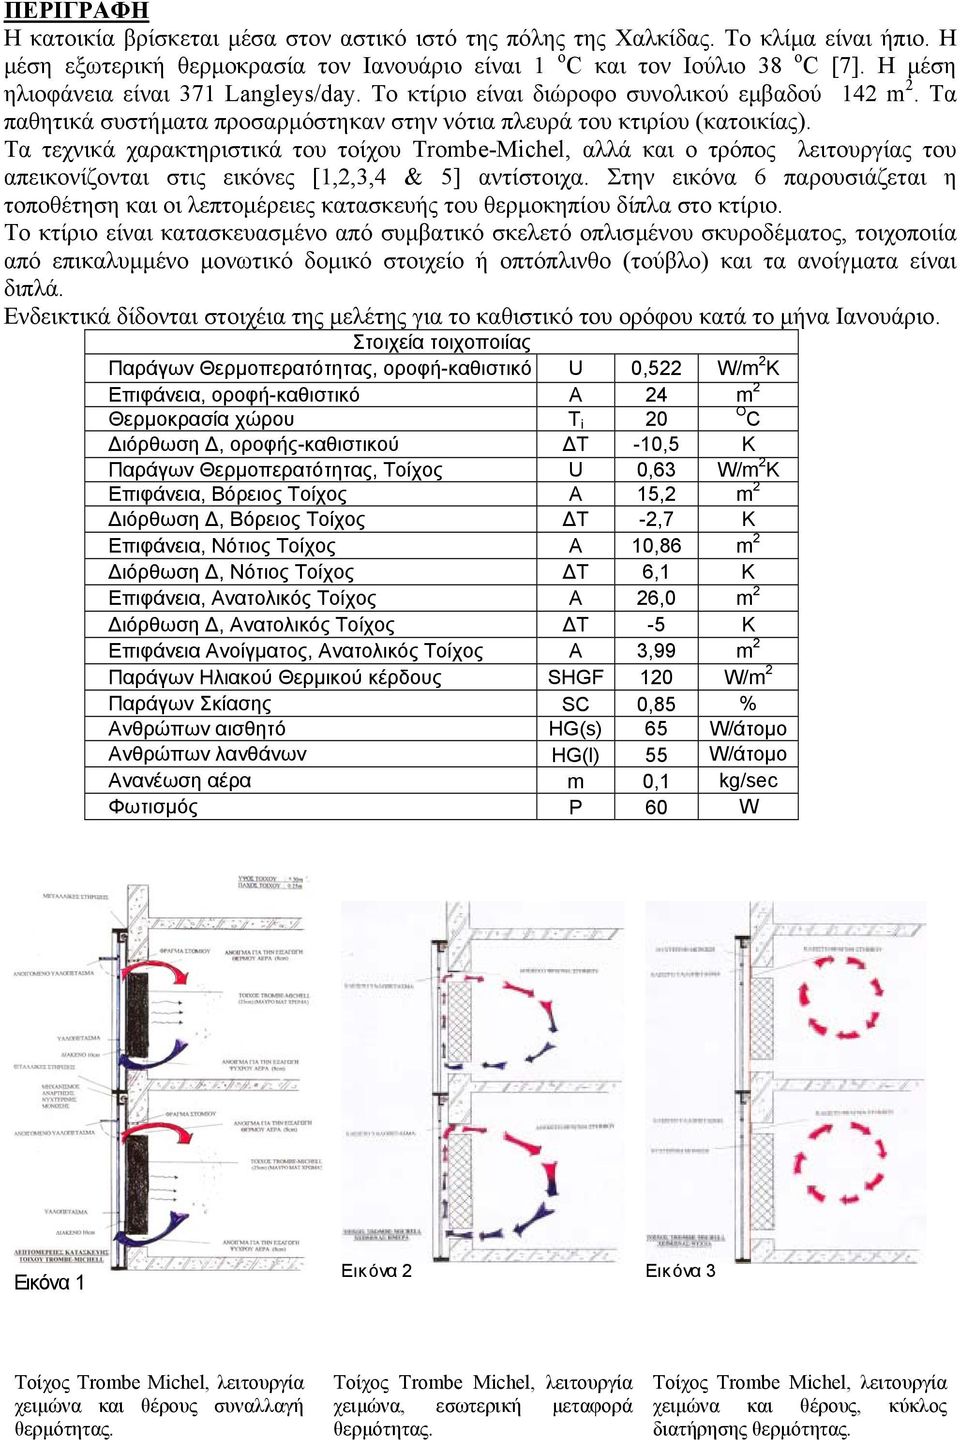 Τα τεχνικά χαρακτηριστικά του τοίχου Τrombe-Michel, αλλά και ο τρόπος λειτουργίας του απεικονίζονται στις εικόνες [1,2,3,4 & 5] αντίστοιχα.